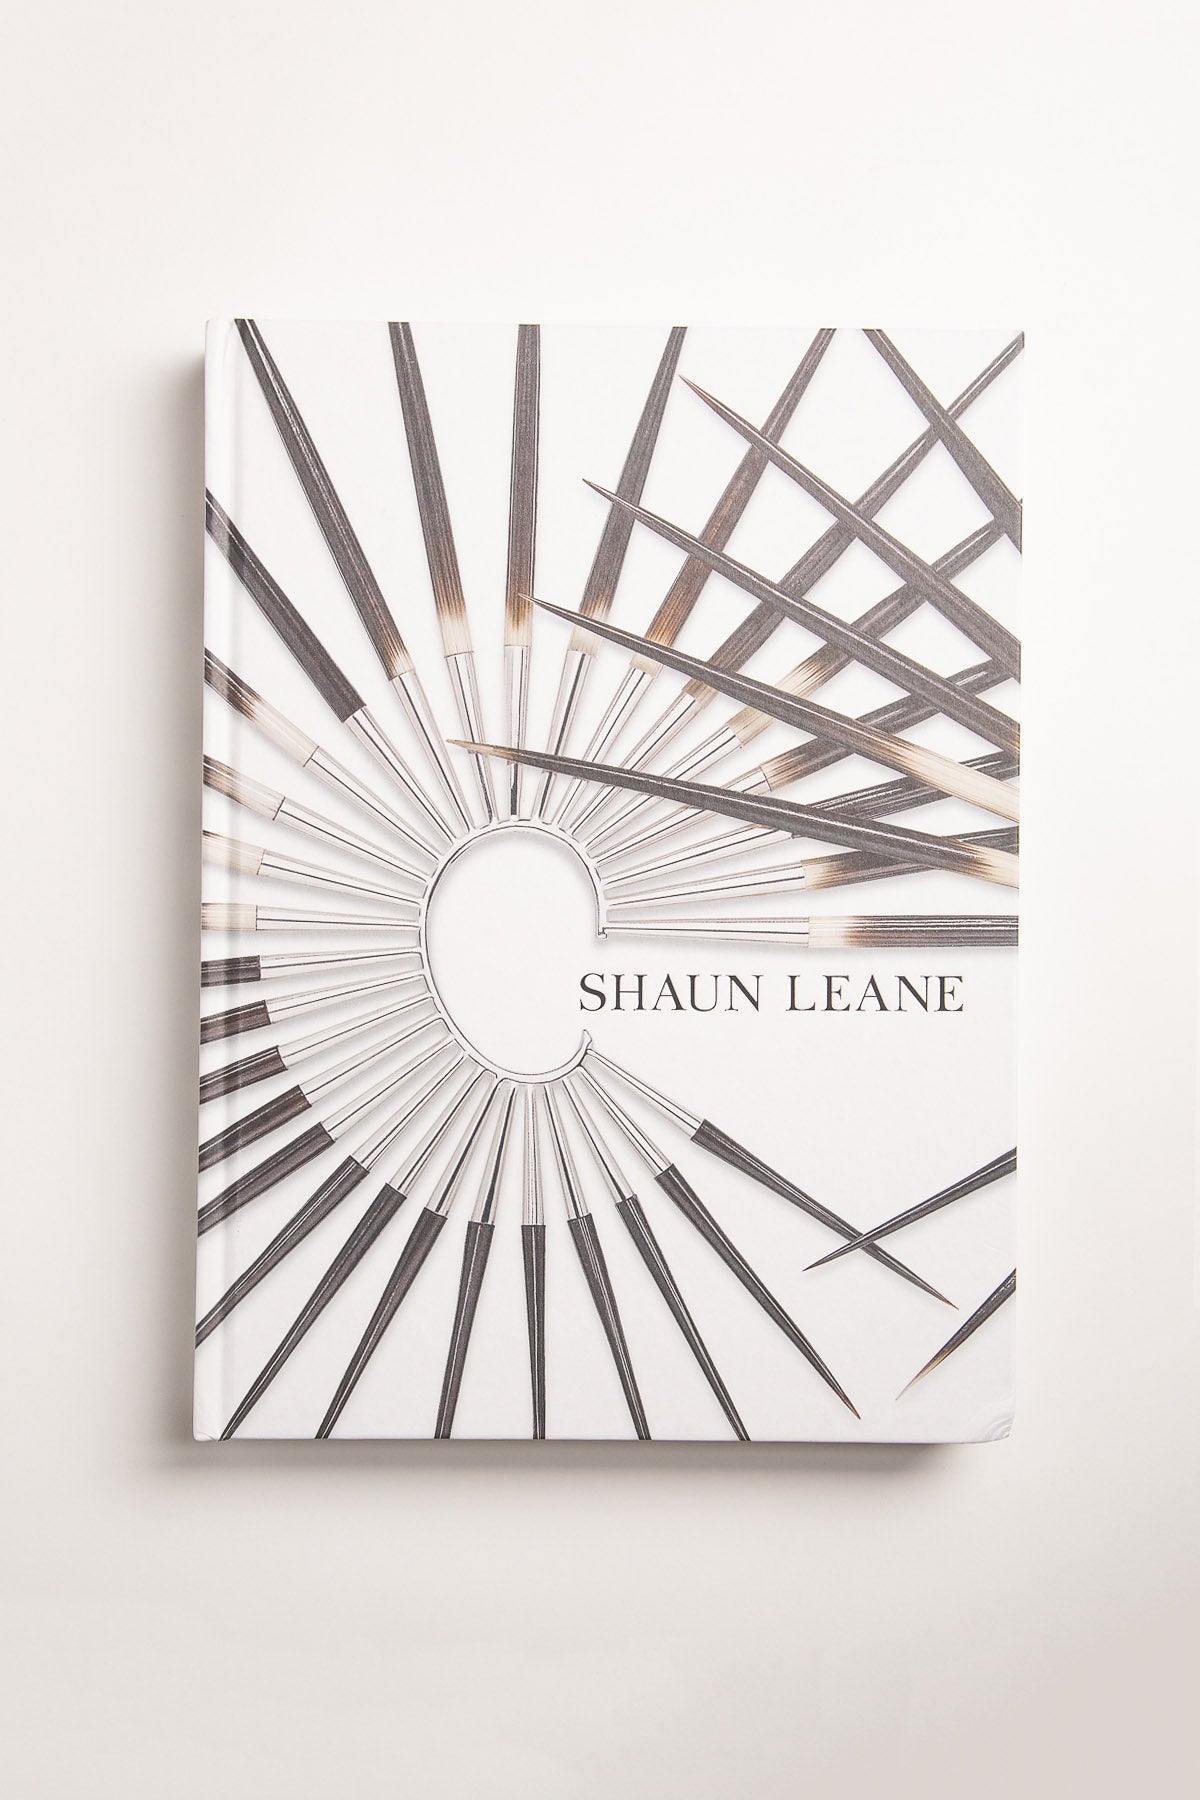 ACC | SHAUN LEANE – MAXFIELD LA